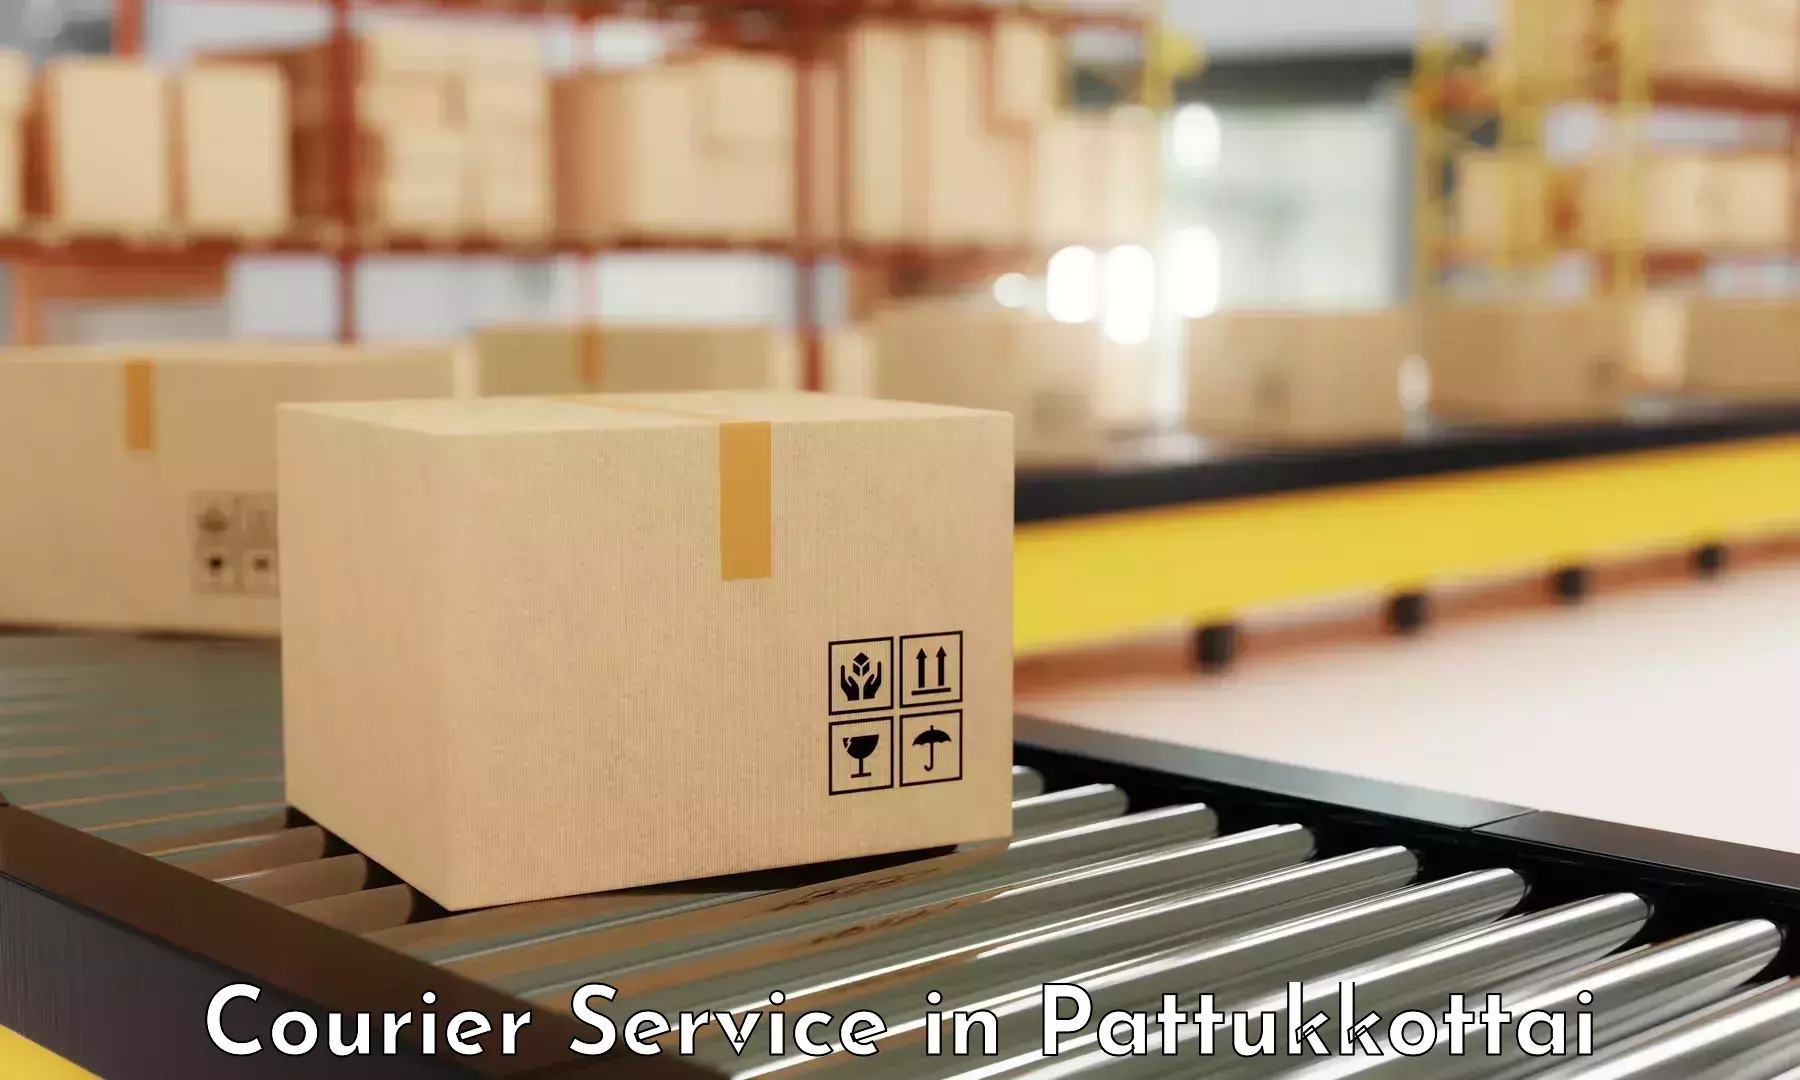 Customer-oriented courier services in Pattukkottai